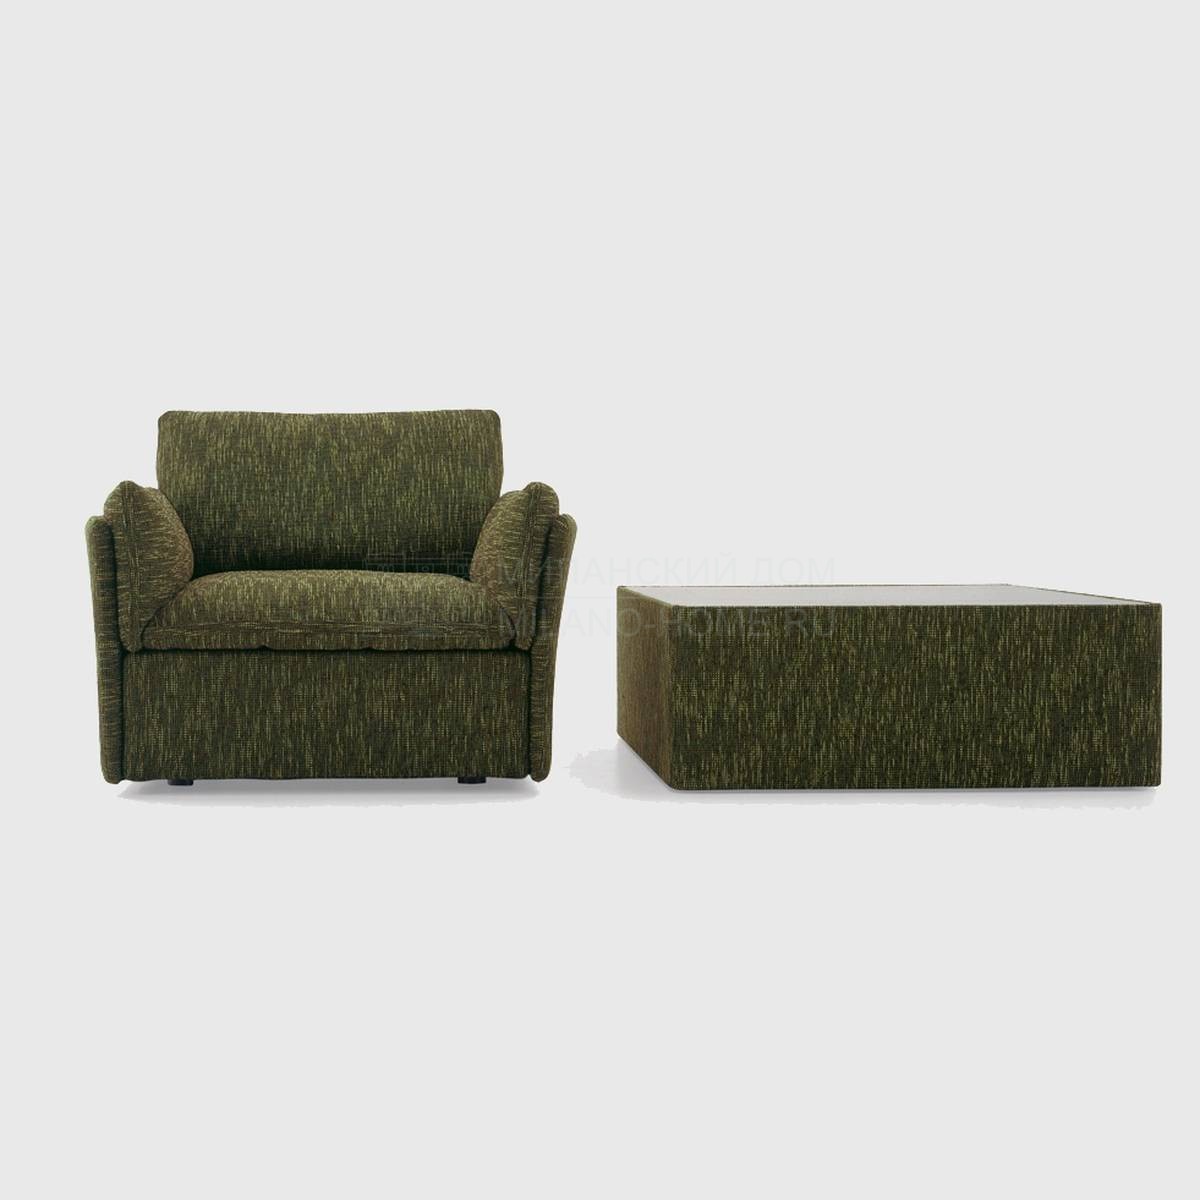 Кресло Tempt/armchair из Италии фабрики NUBE